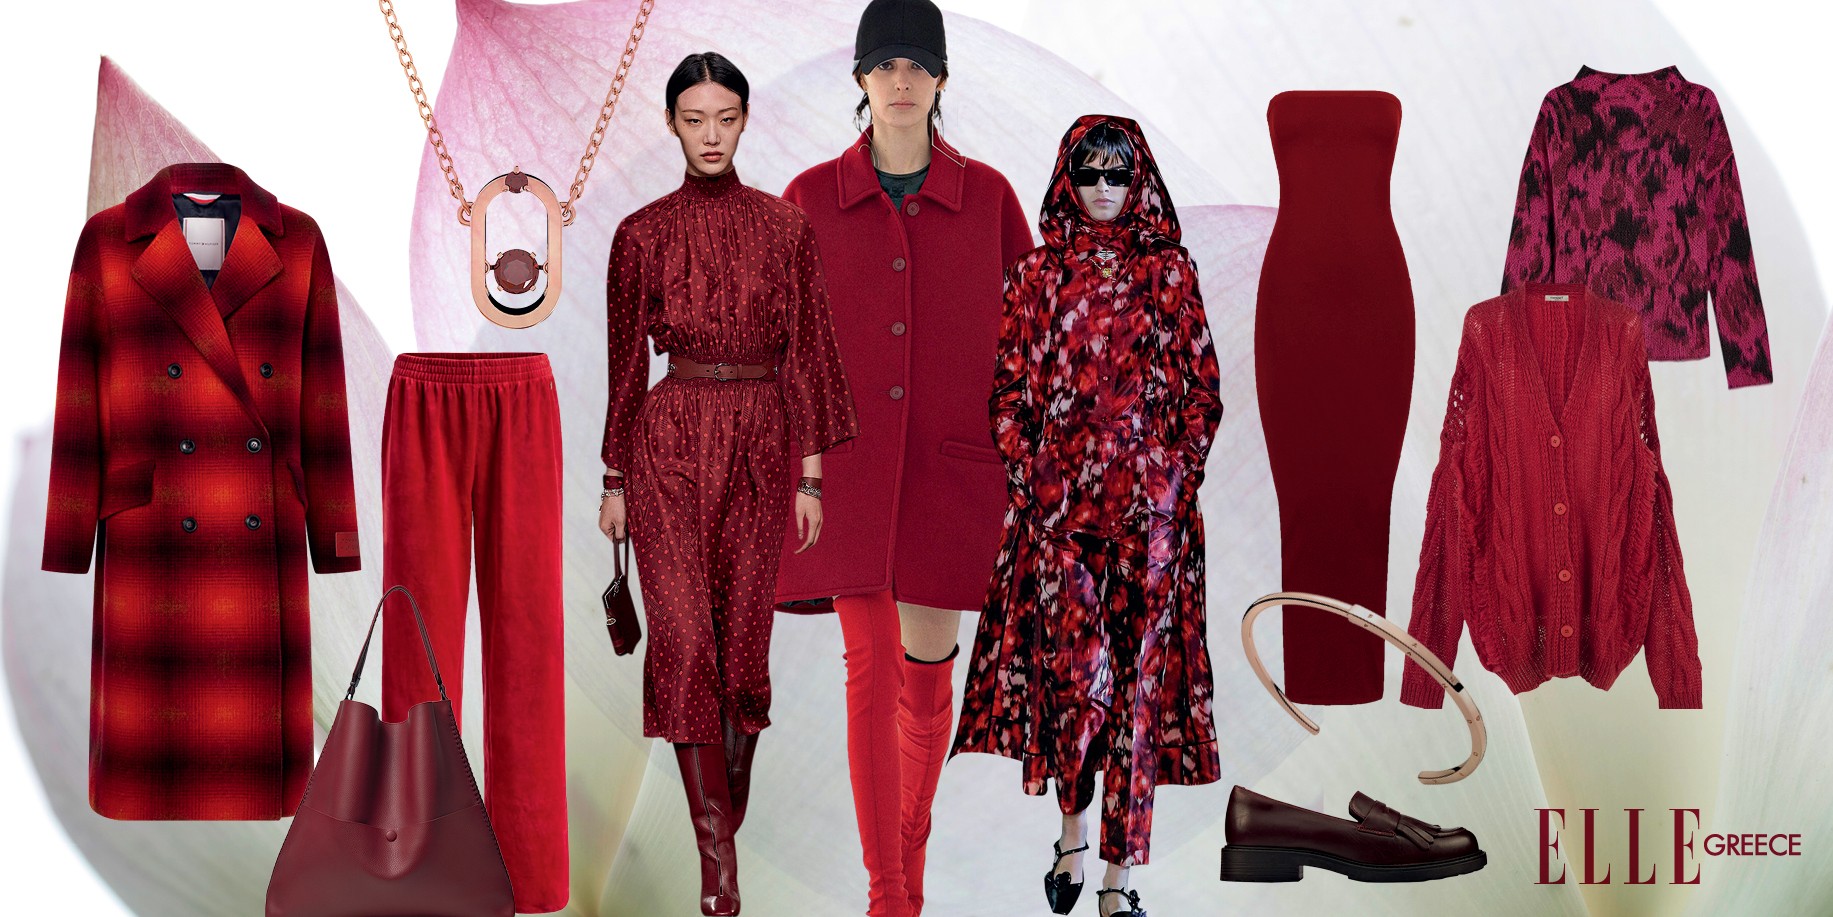 18 τρόποι να φορέσεις το κόκκινο και μετά τις γιορτές